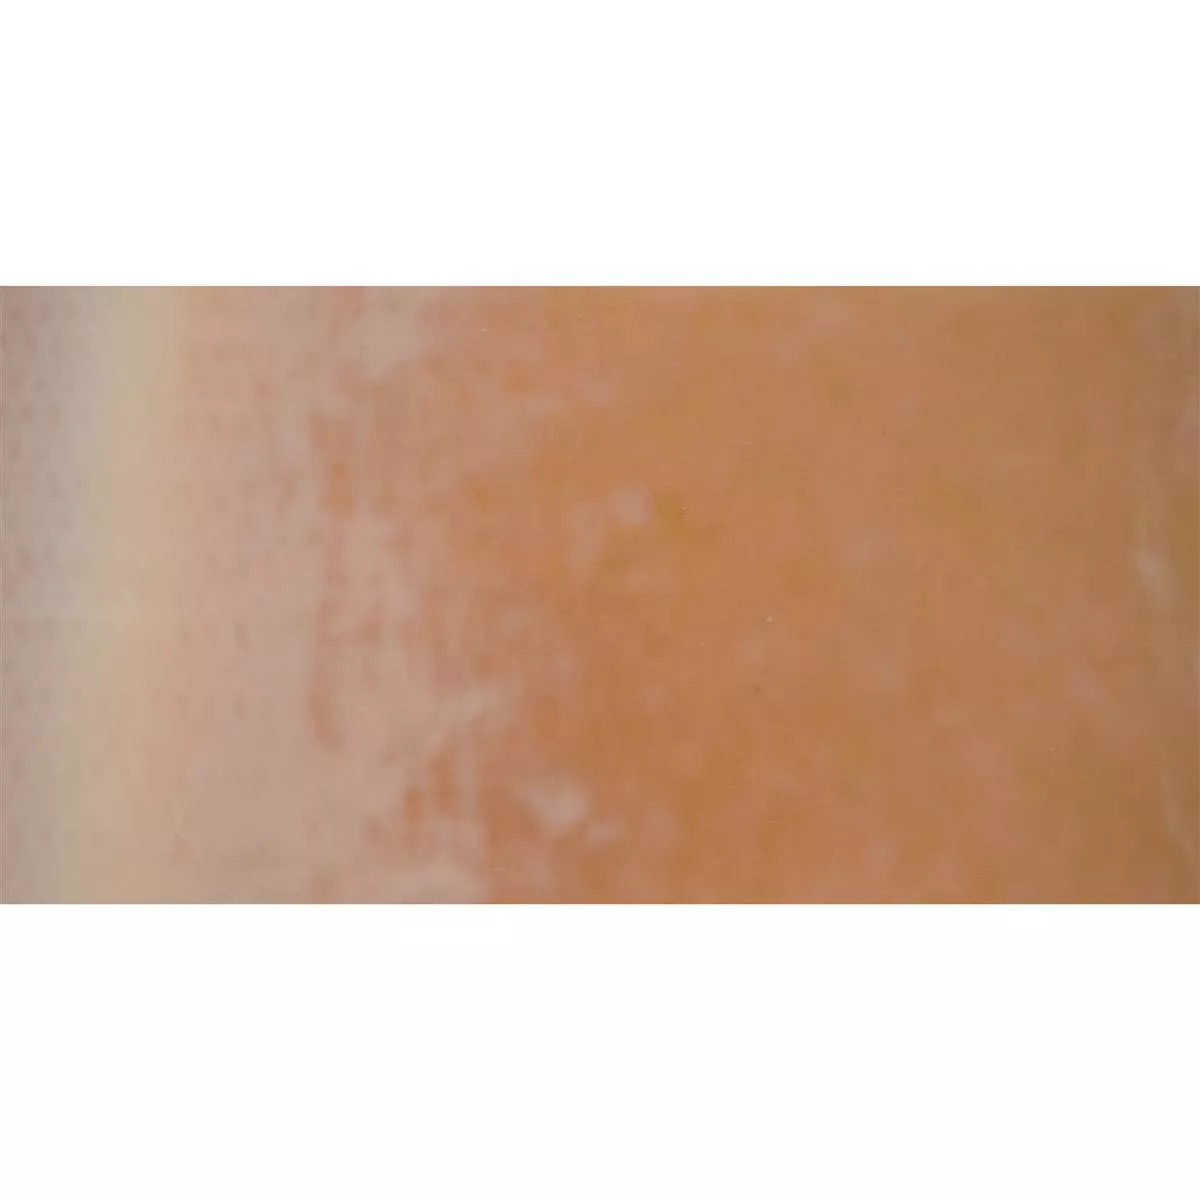 Staklo Zidne Pločice Trend-Vi Supreme Deserts Brown 30x60cm